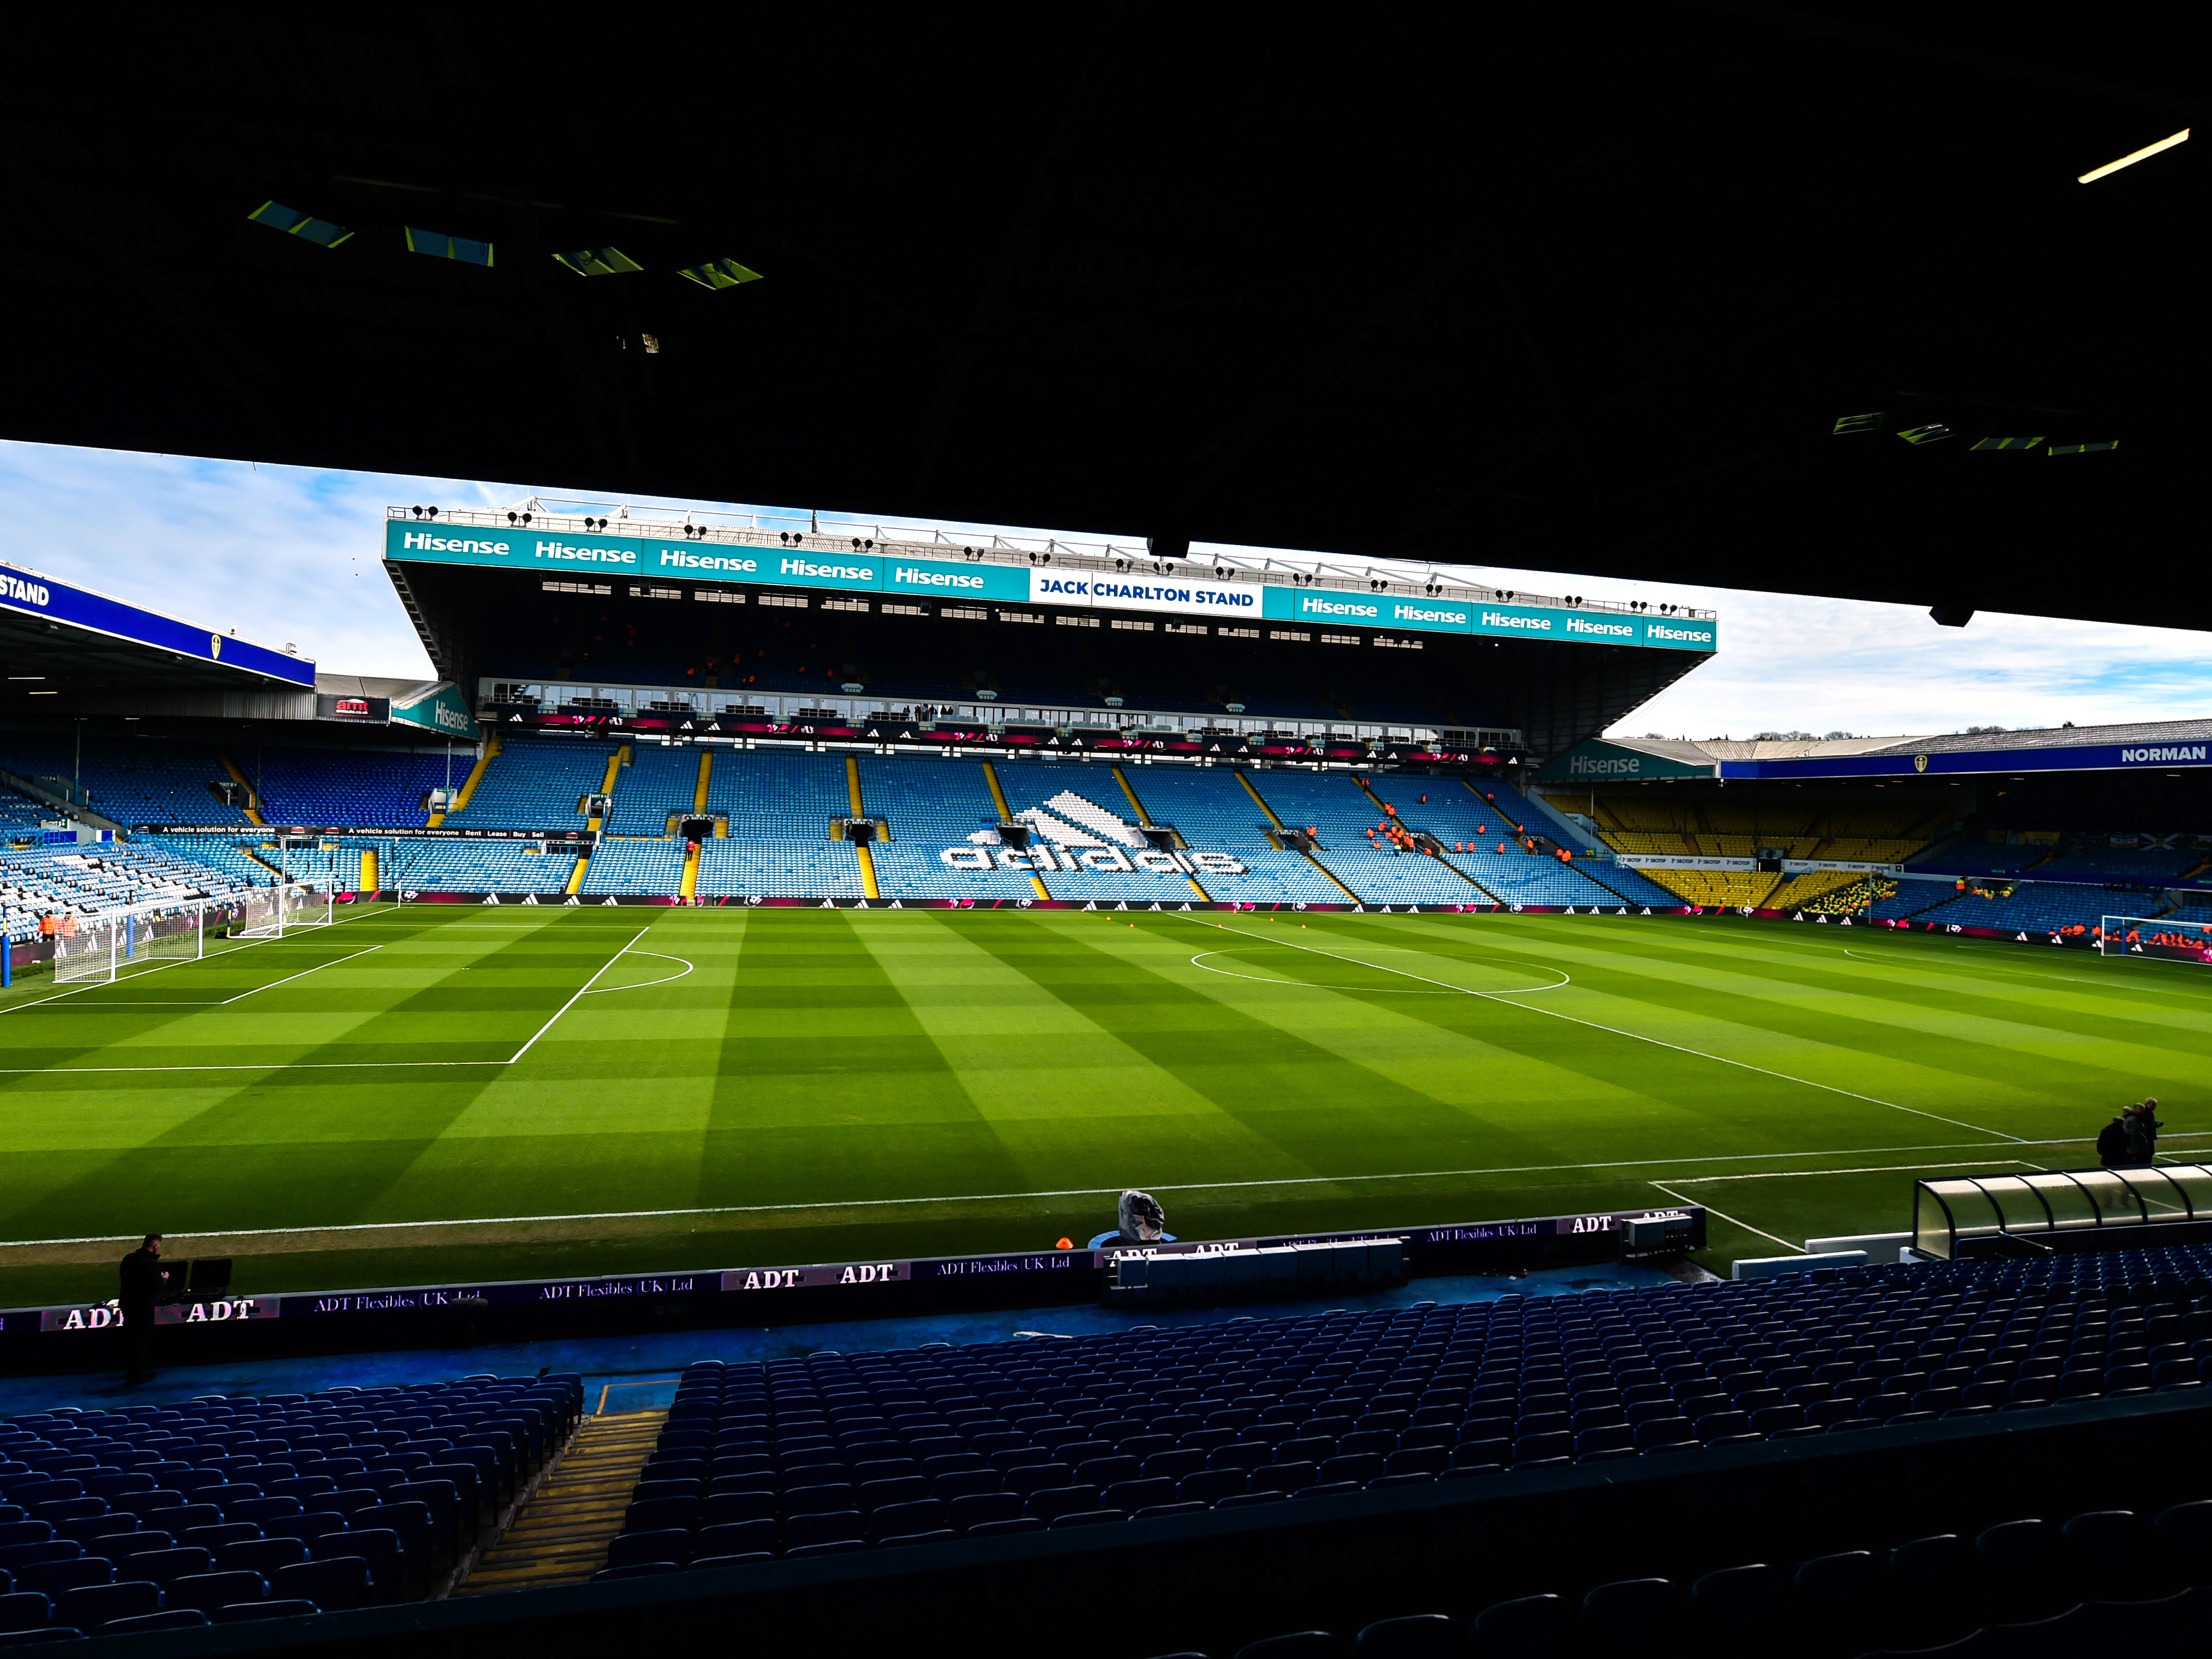 An image of Leeds United's Elland Road Stadium